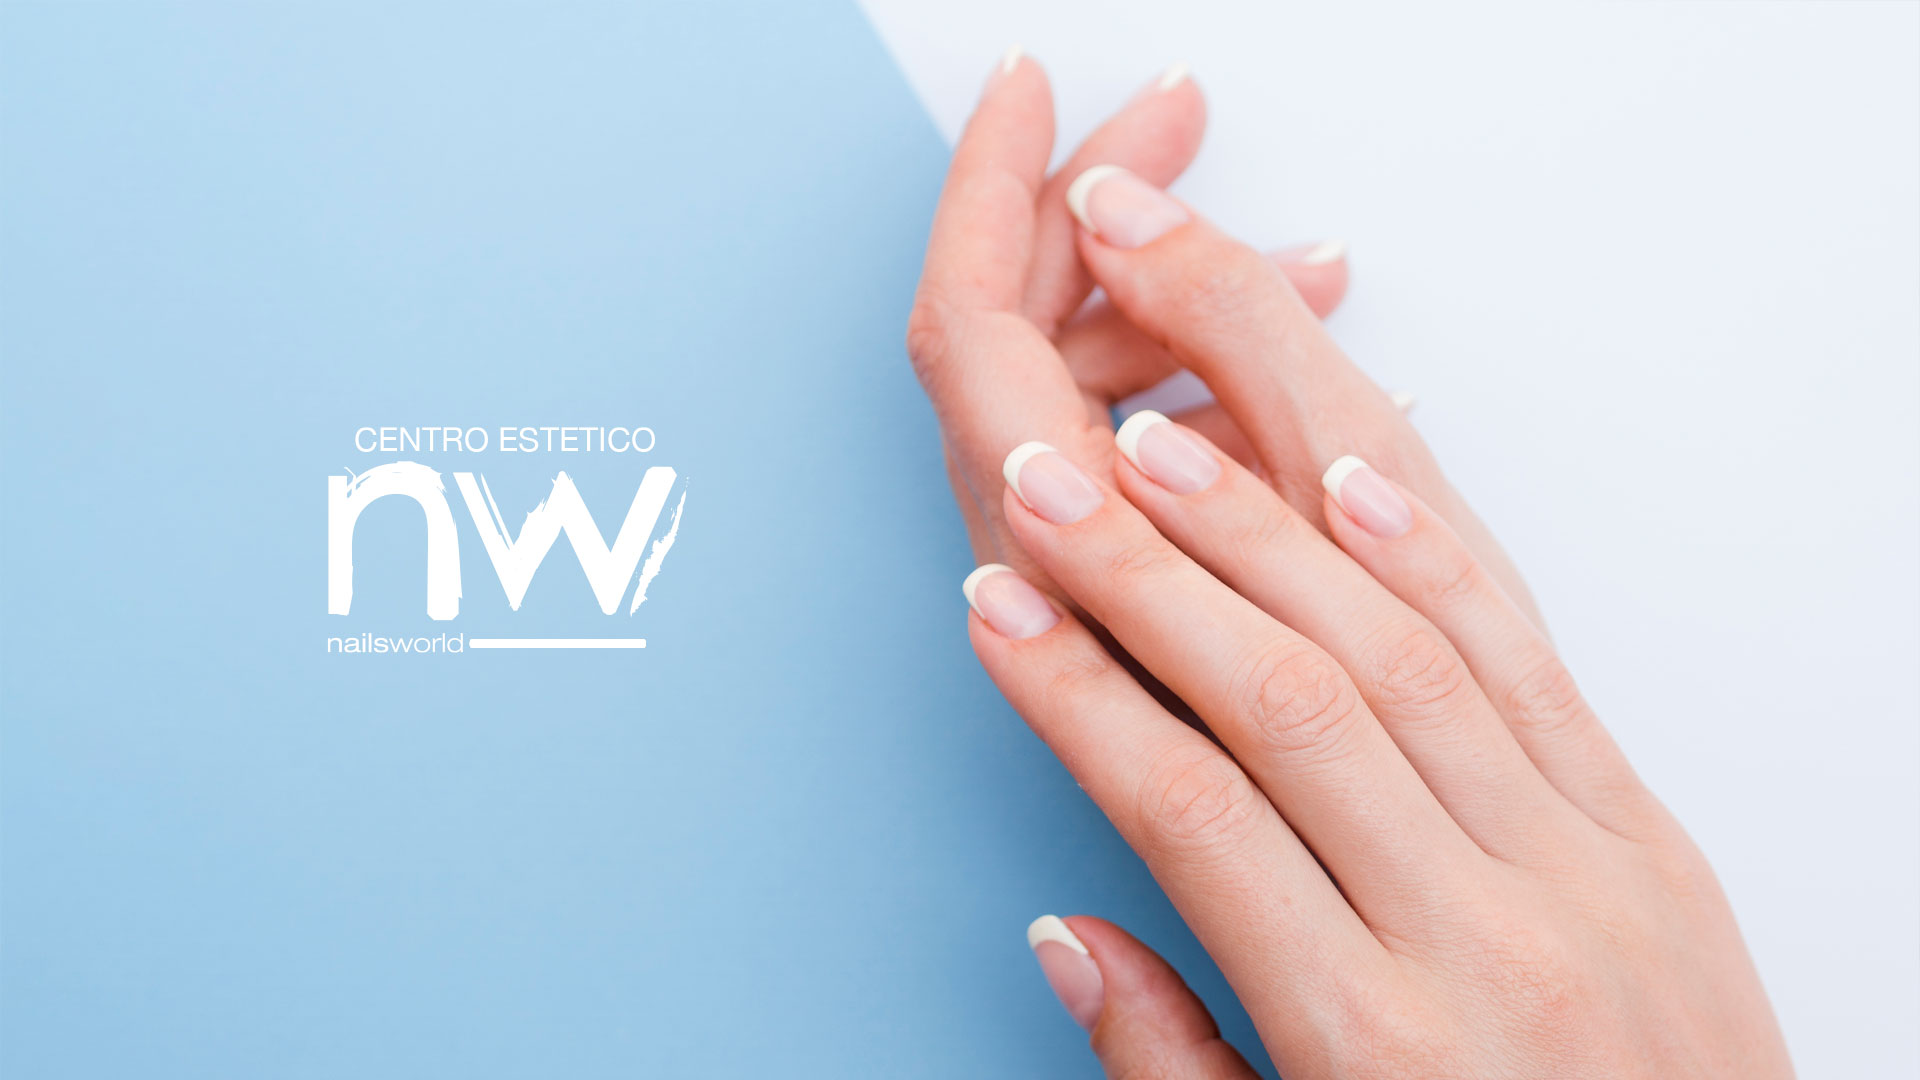 cnw slide 04 - Centro Estetico Nailsworld